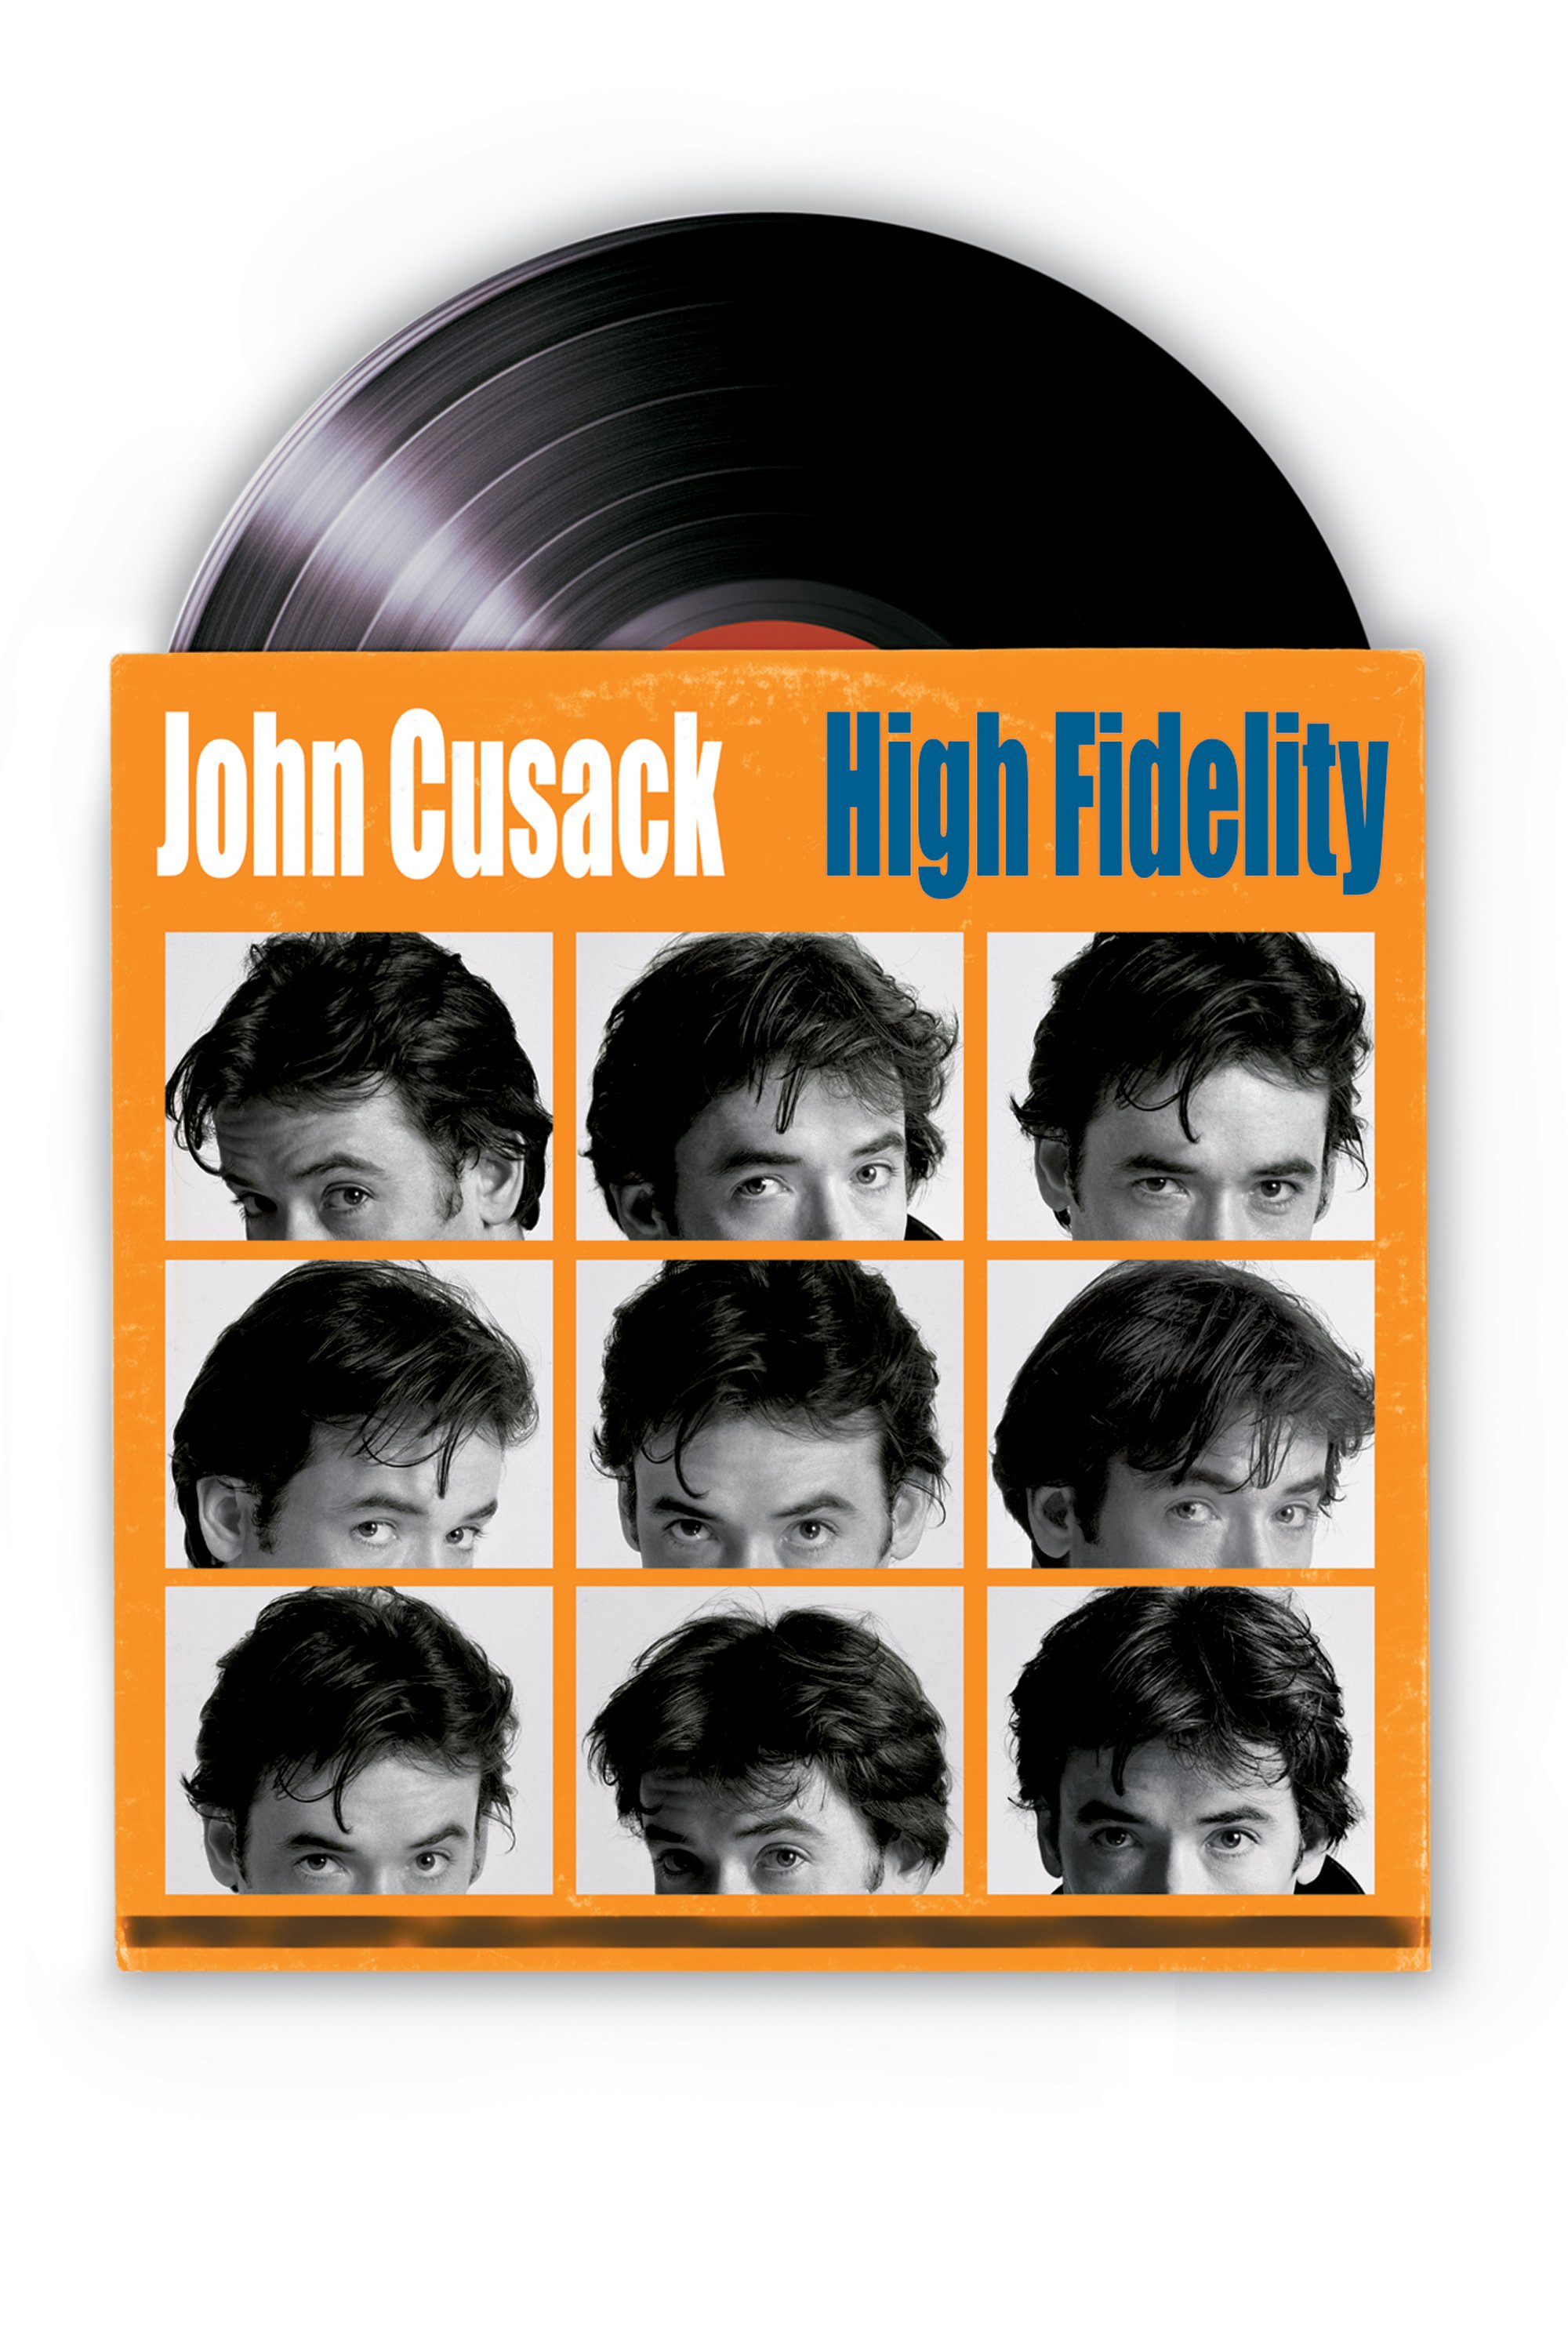 Plakat von "High Fidelity"